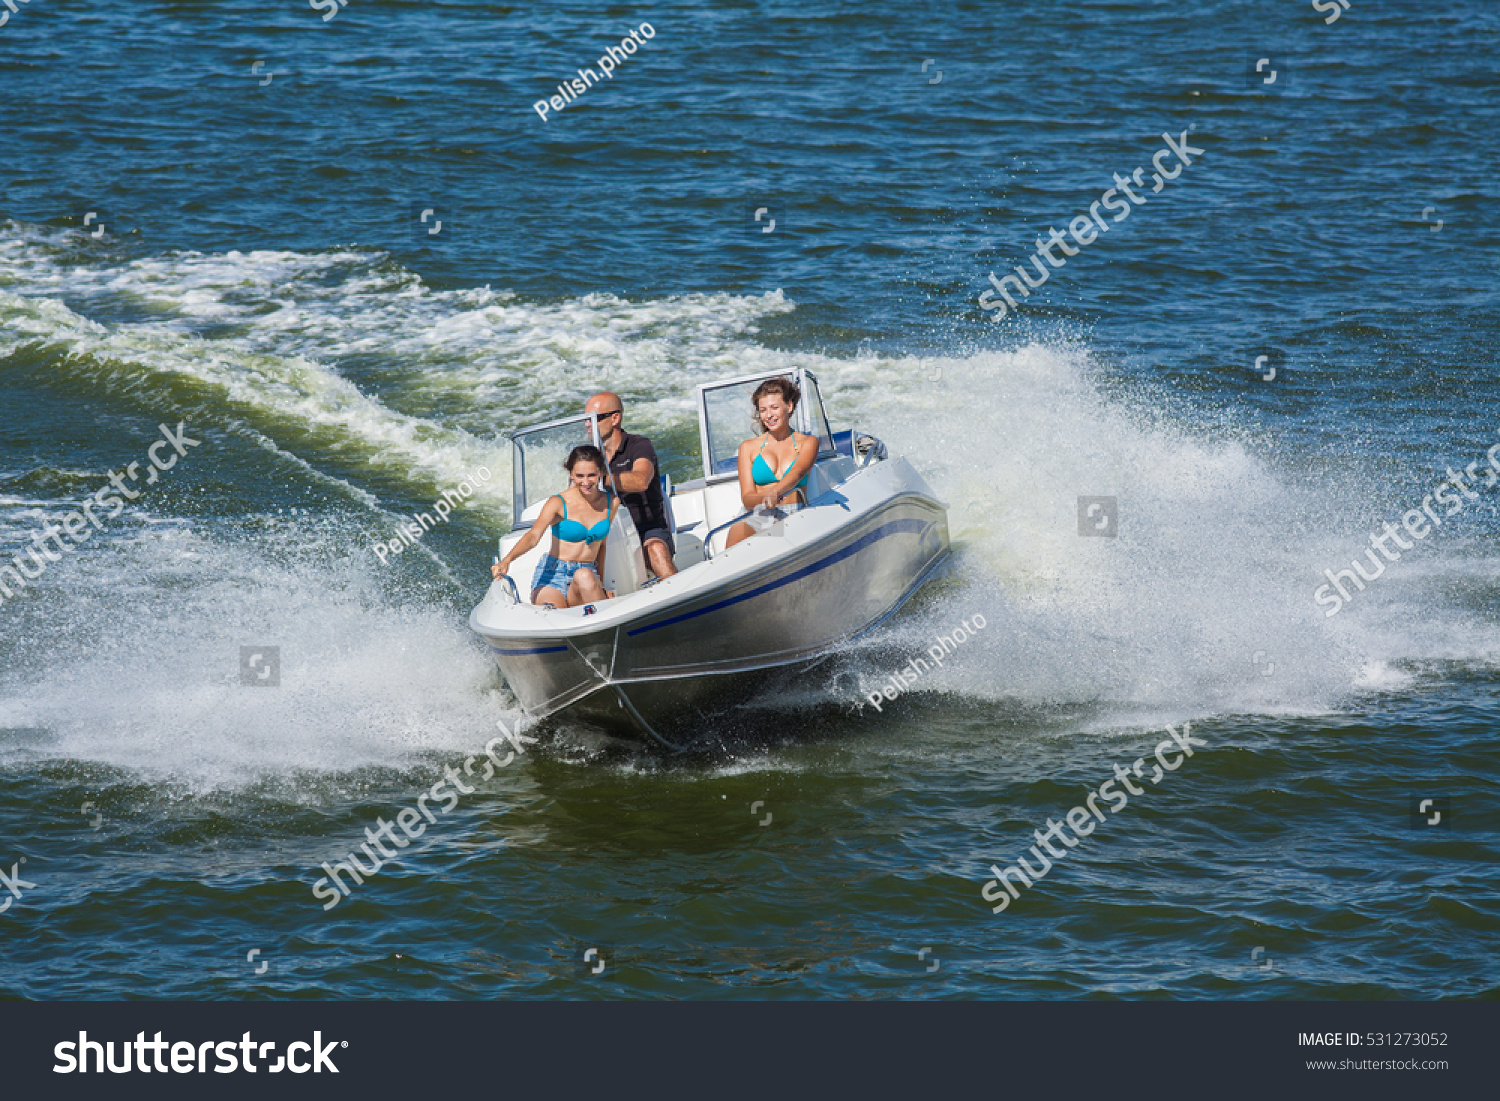 Girl On Boat Ride Drift Stock Photo 531273052 - Shutterstock-6054